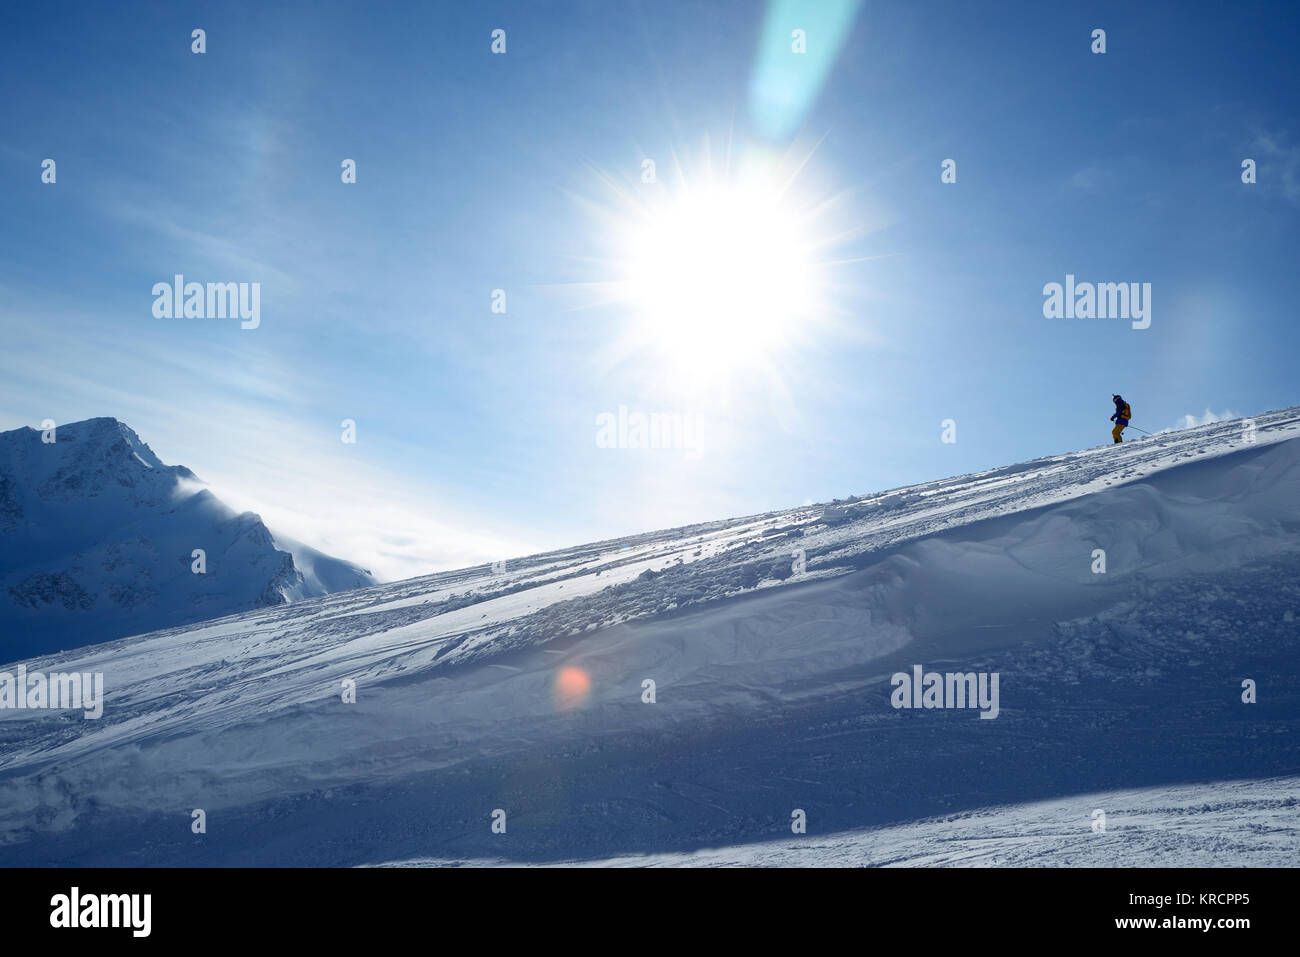 La descente des skieurs de pente sur un fond de ciel bleu et les montagnes Banque D'Images